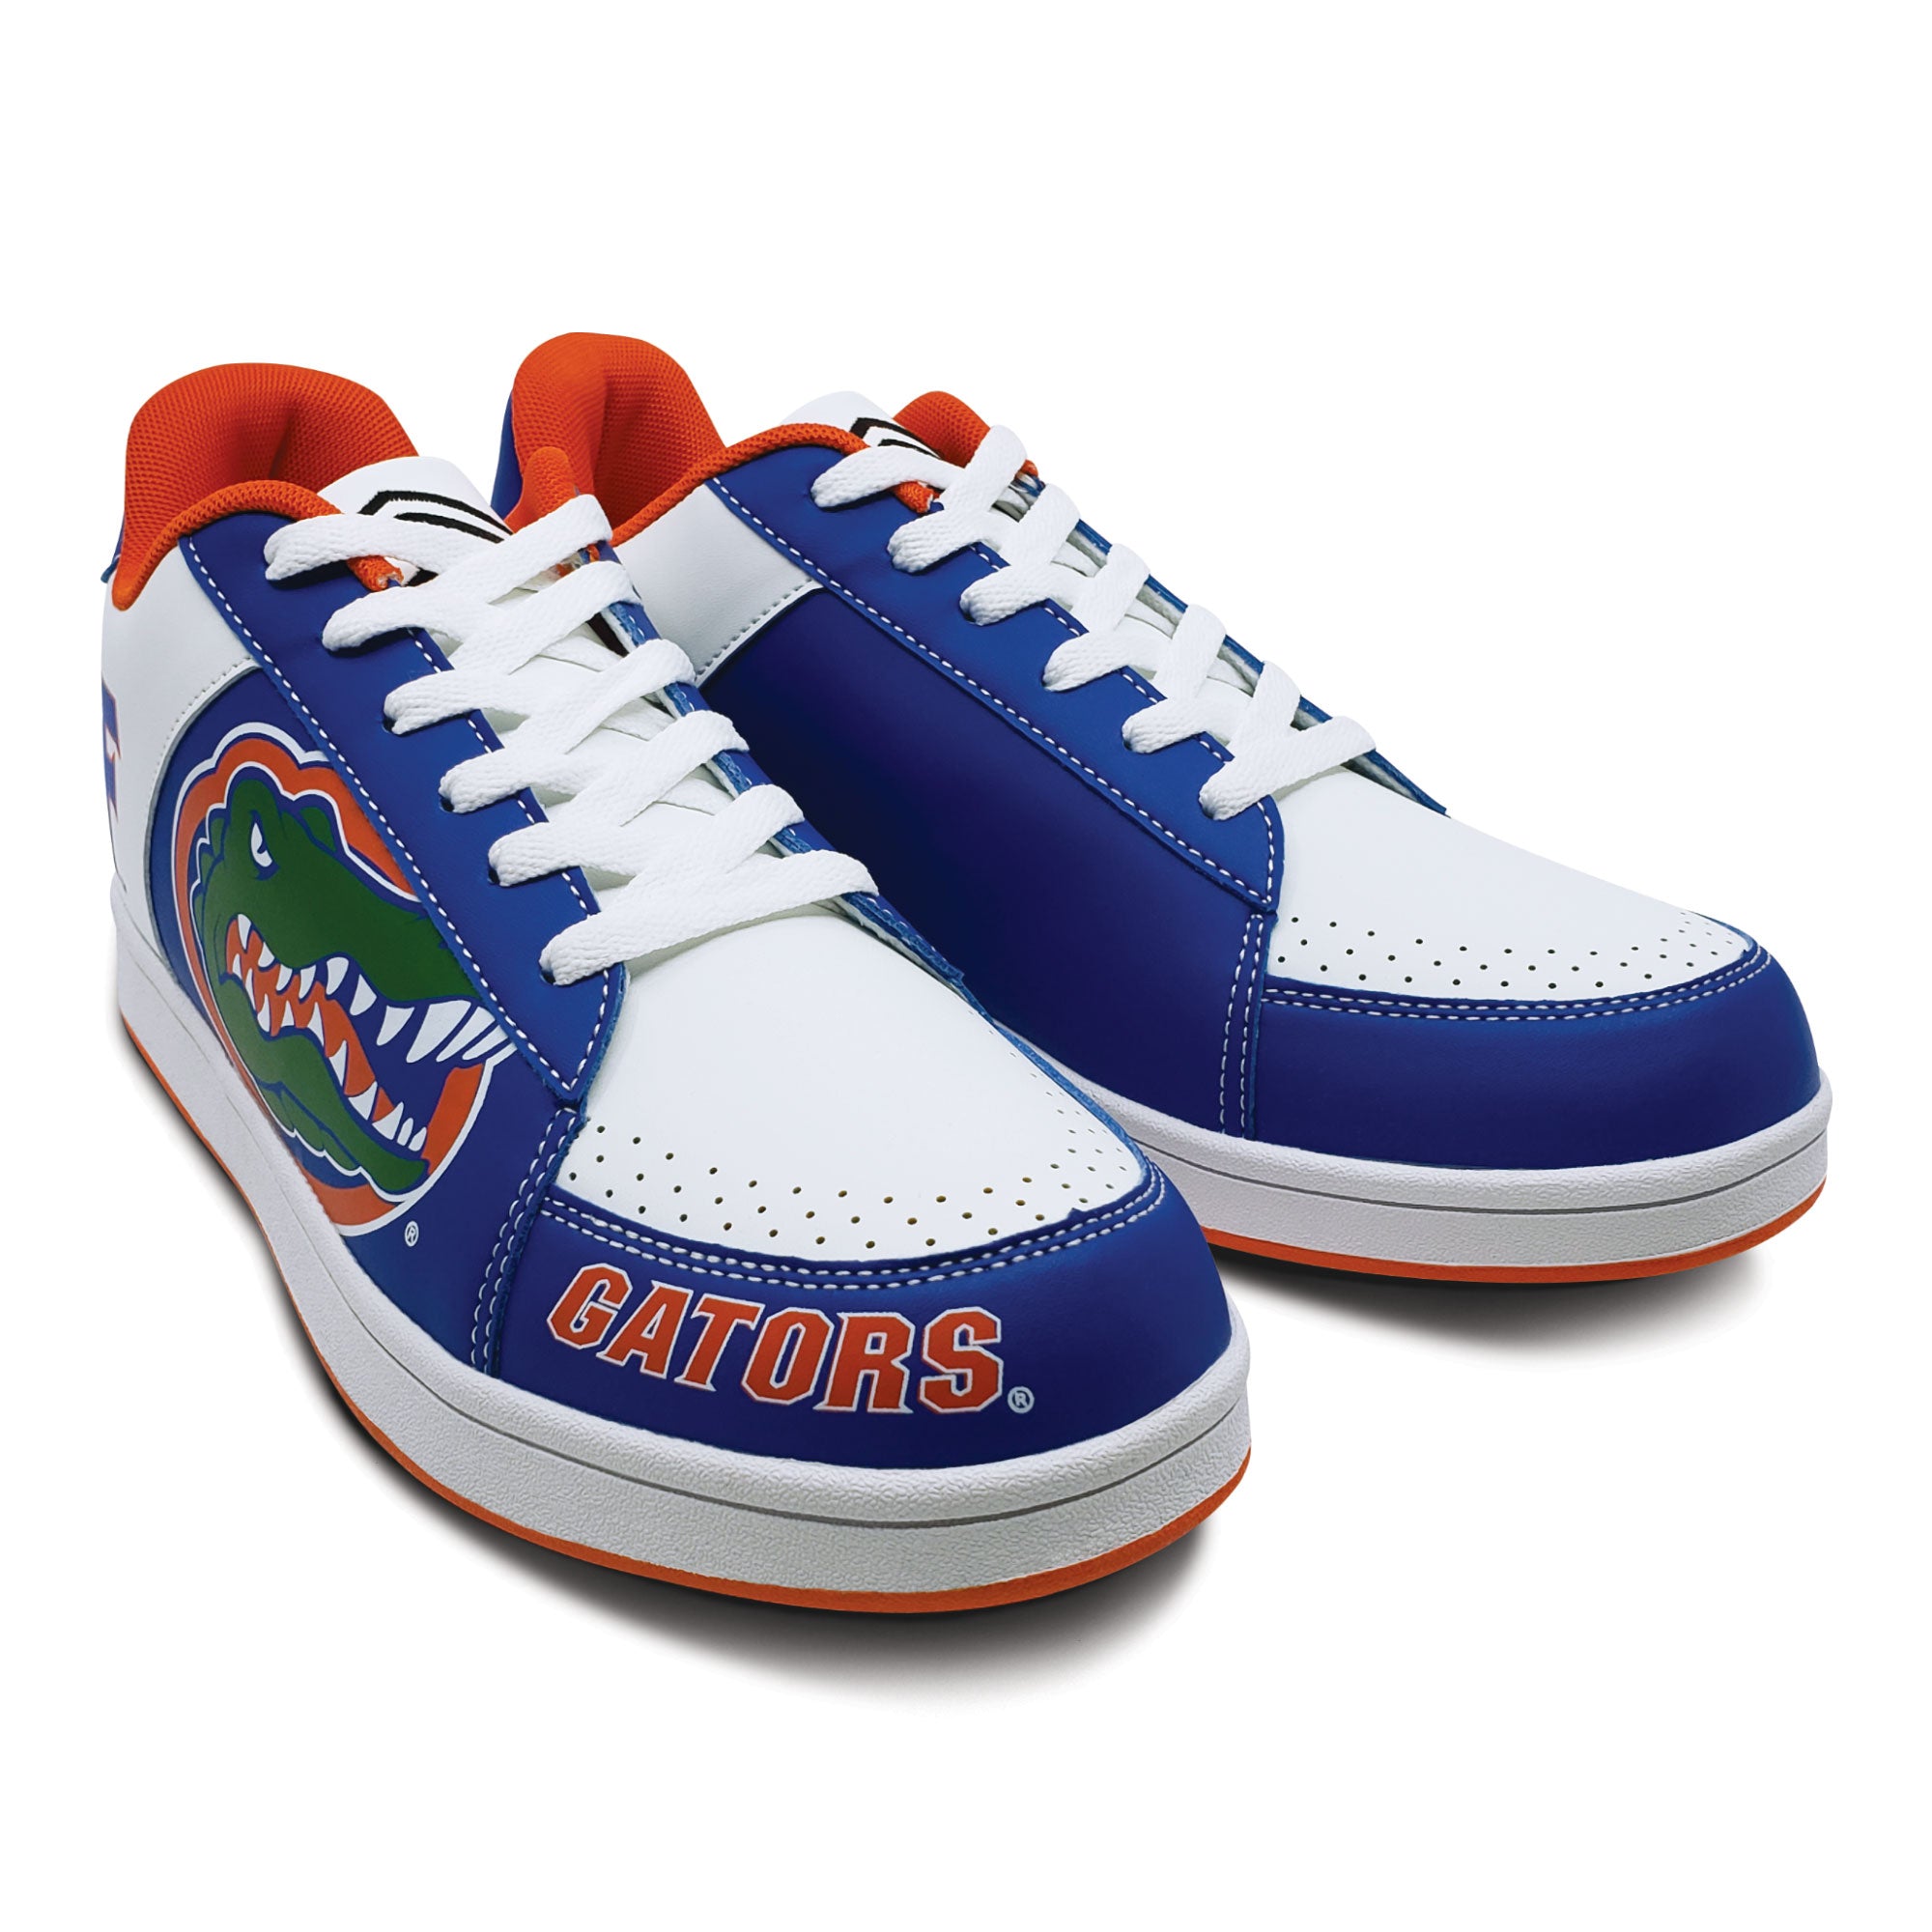 gator sneakers